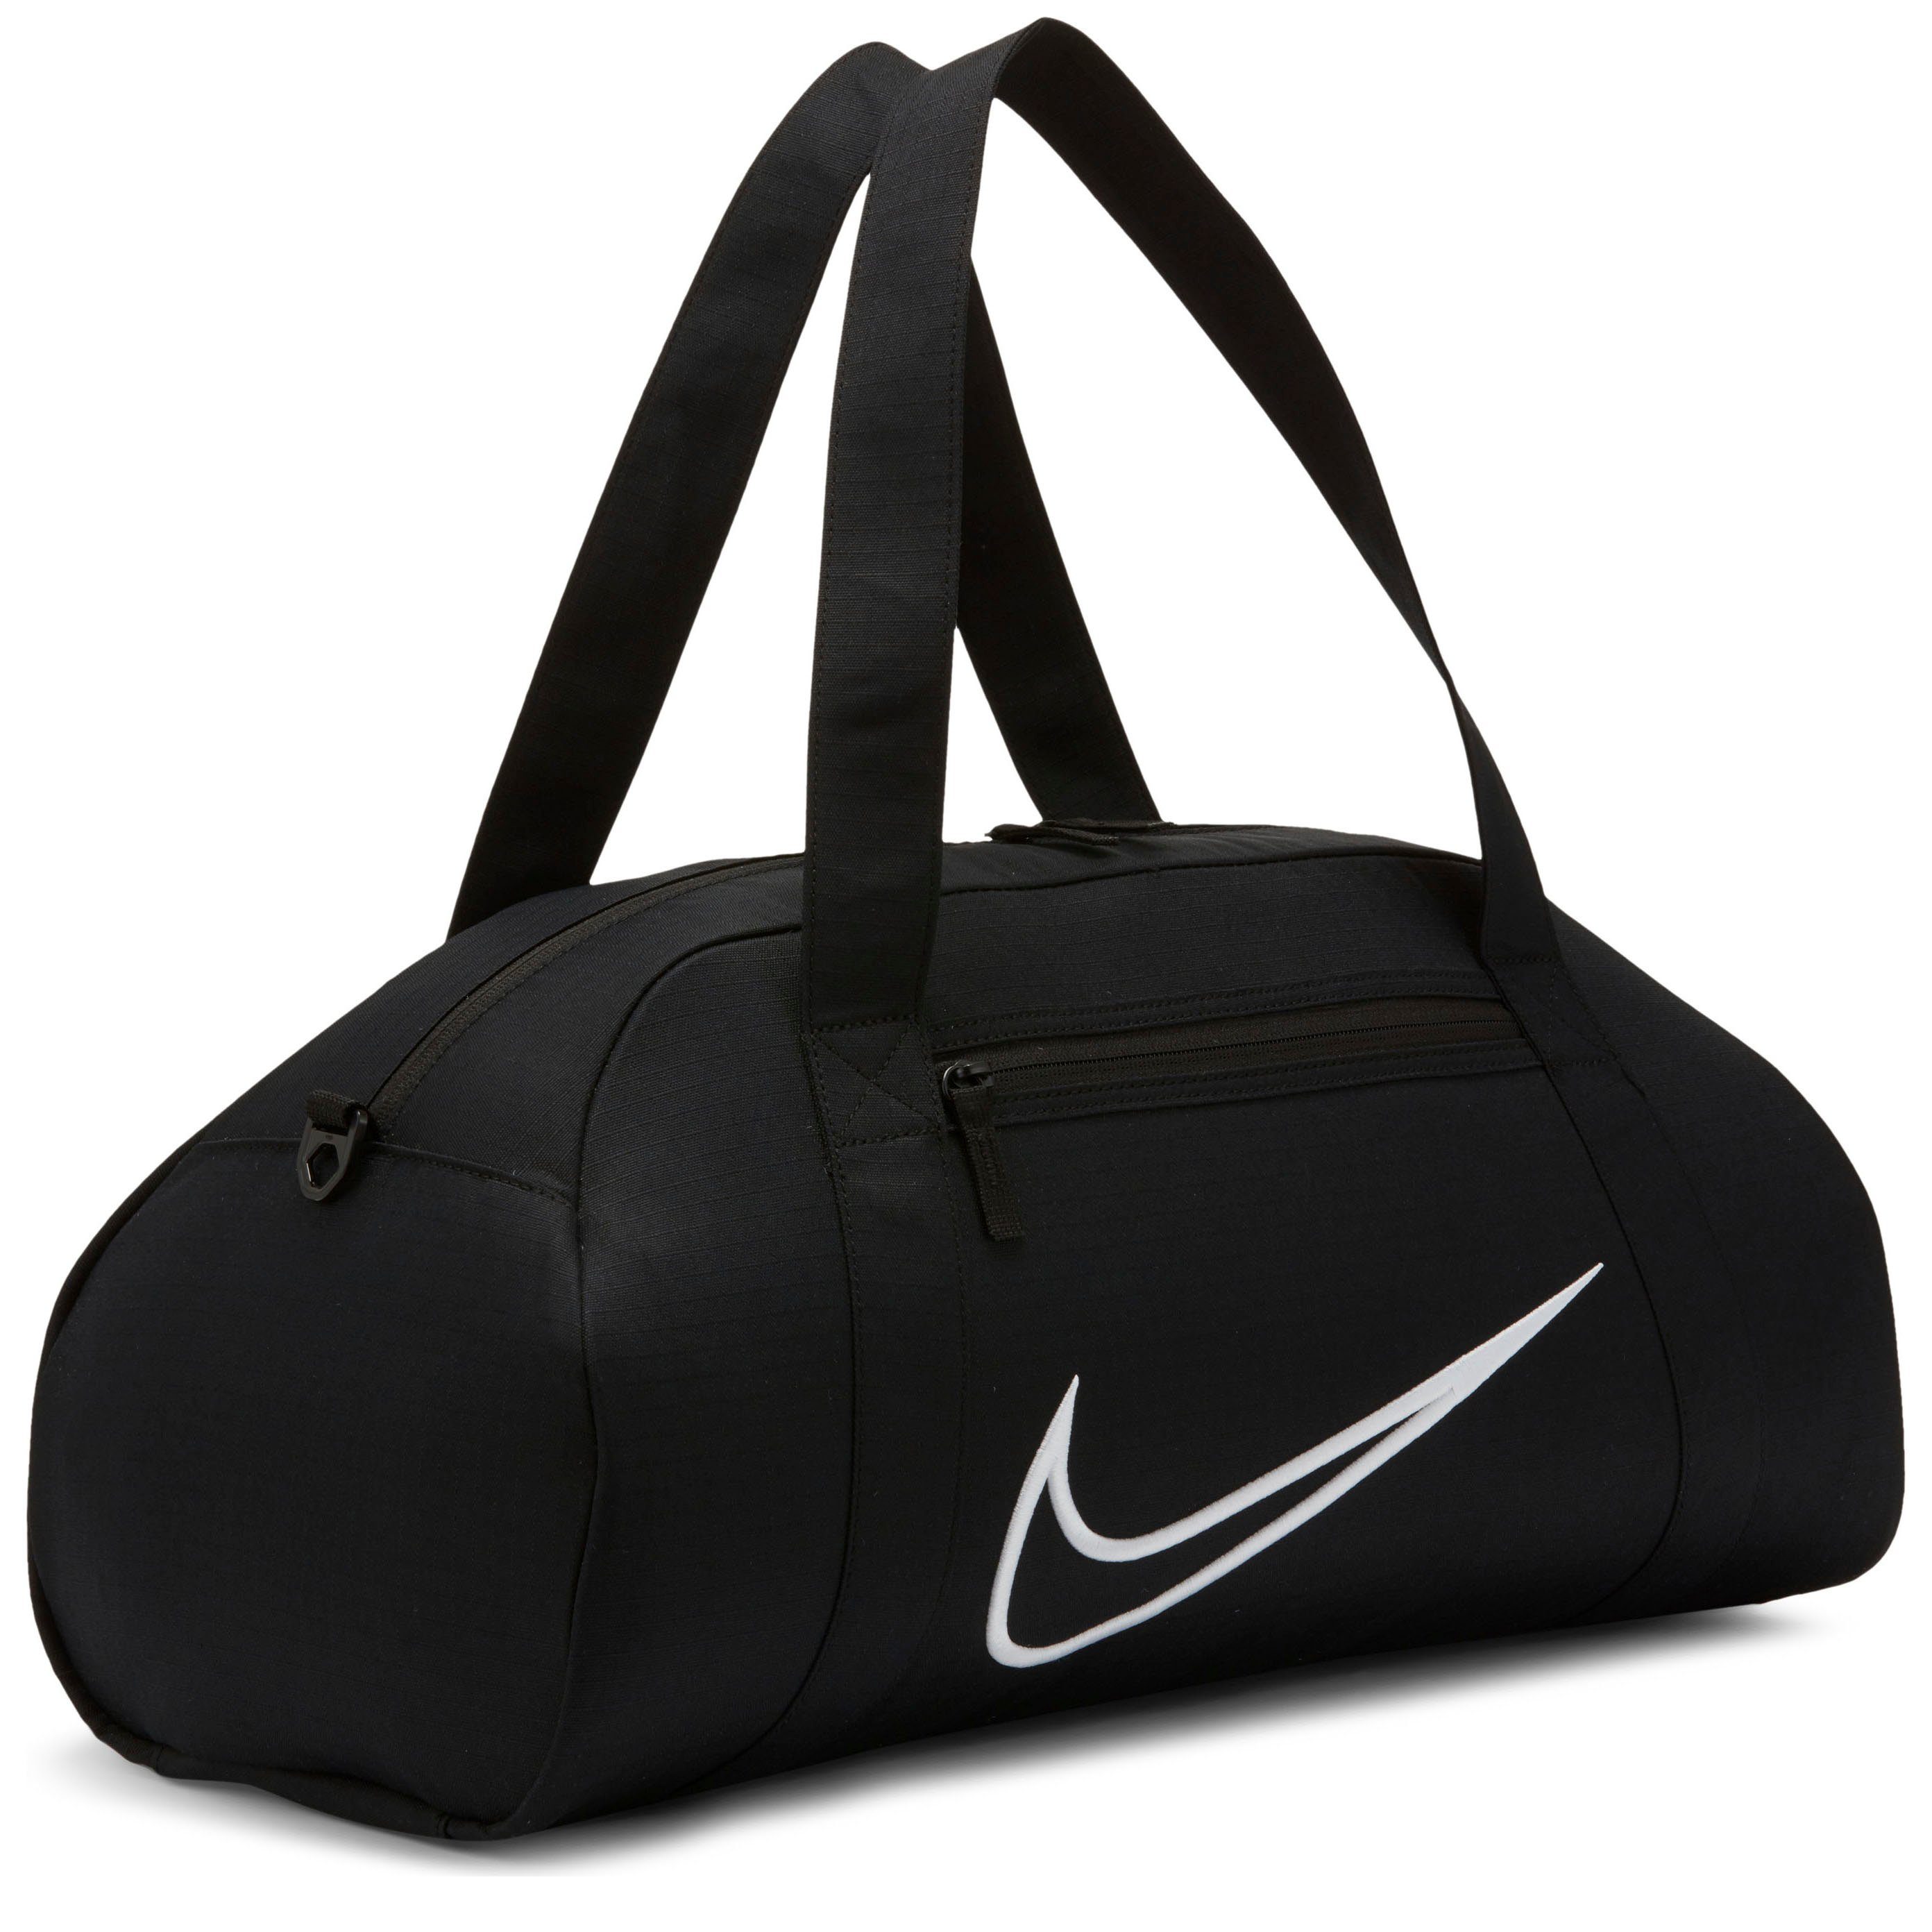 Nike Reisetaschen online kaufen | OTTO